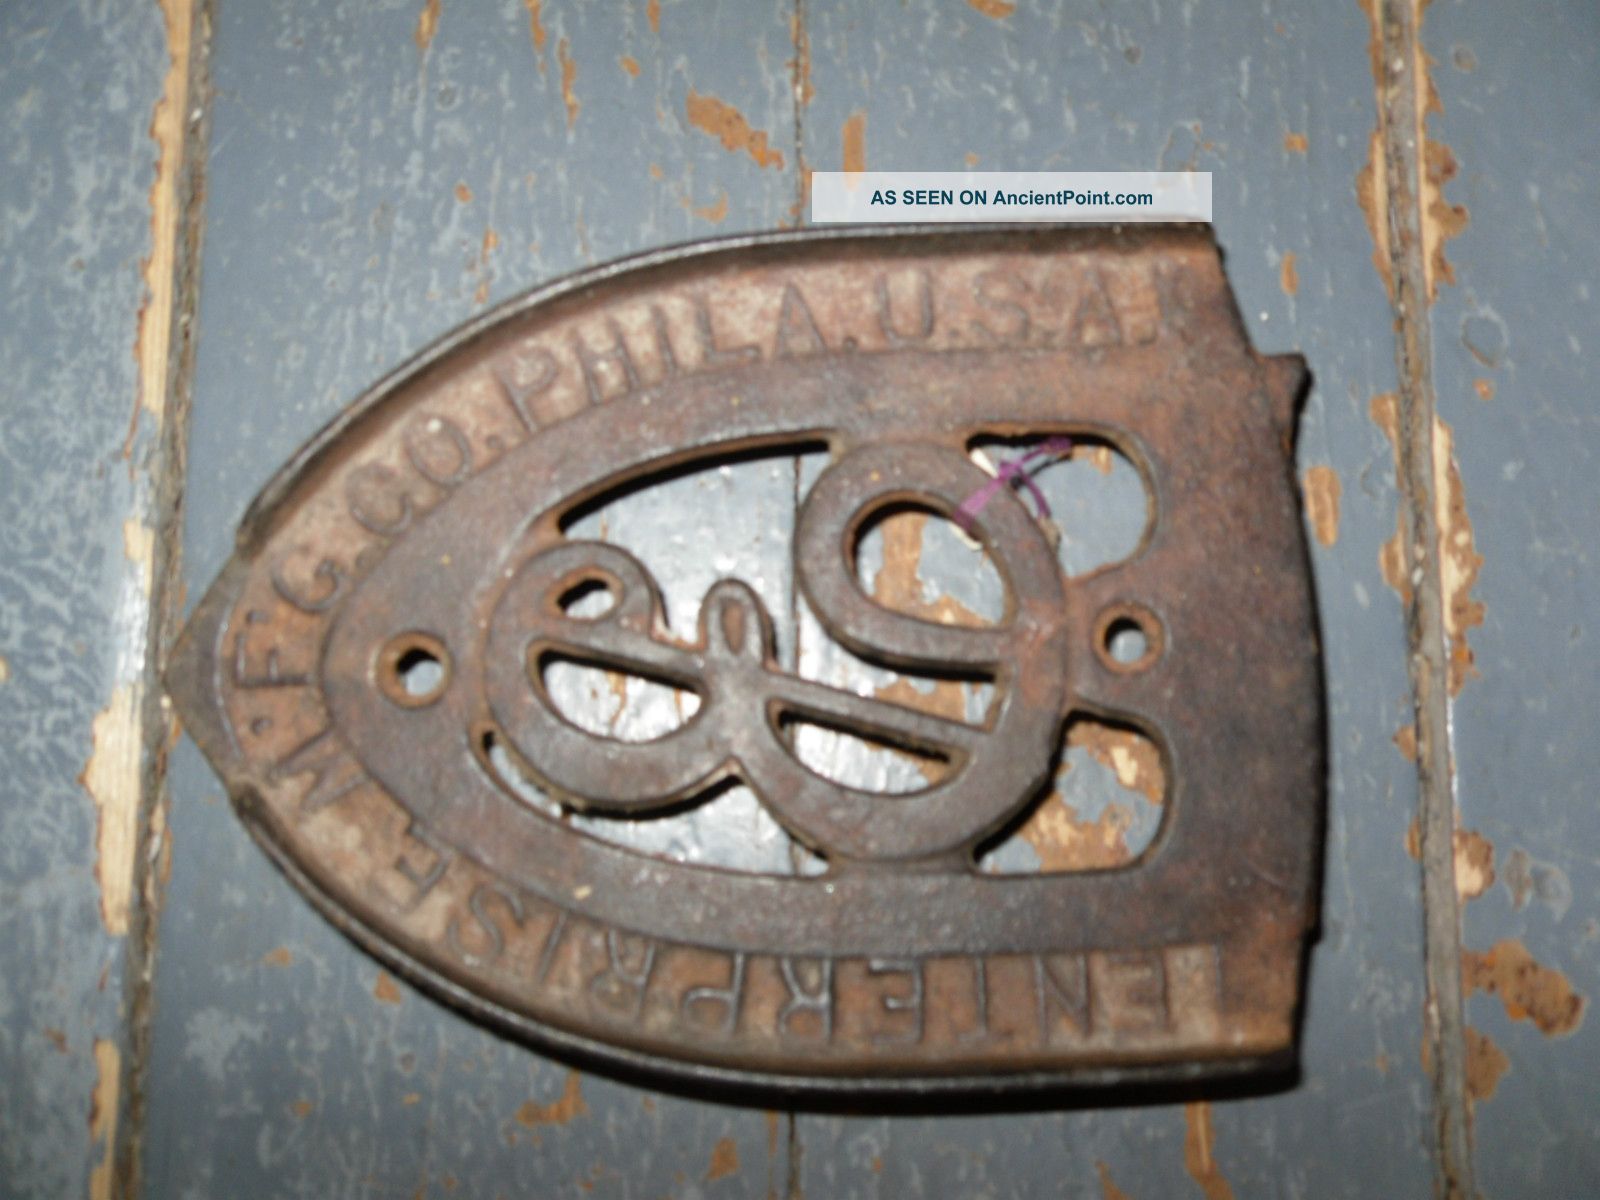 Antique Enterprise Mfg Co Phila Pa Cast Iron Sad Iron Rest Trivet - Old Trivets photo